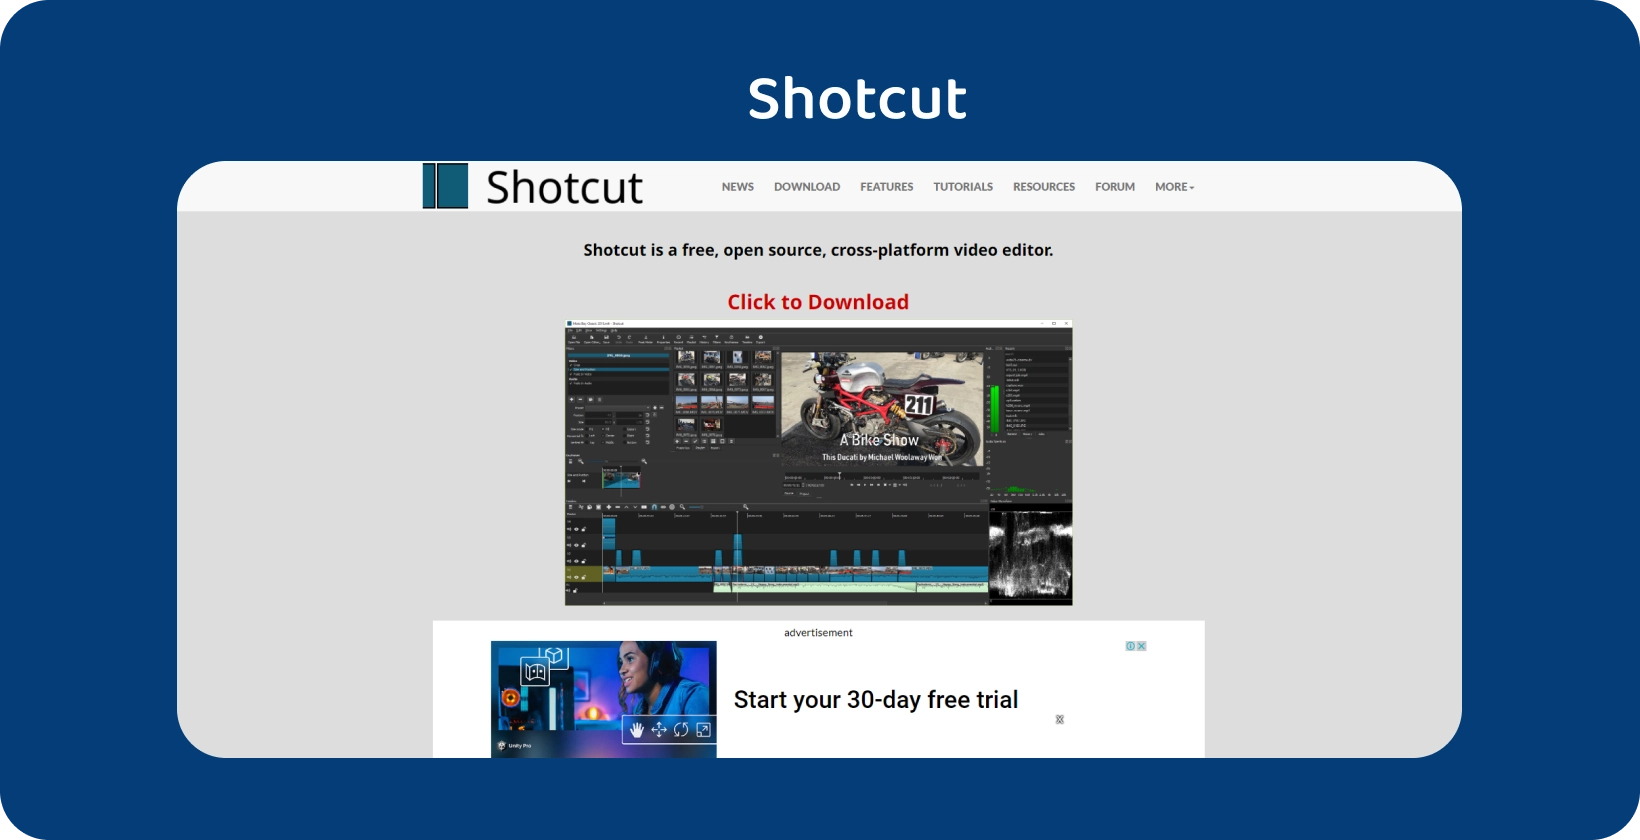 Shotcut interface do editor: Uma linha do tempo detalhada do vídeo da motocicleta com ferramentas de edição robustas claramente exibidas.